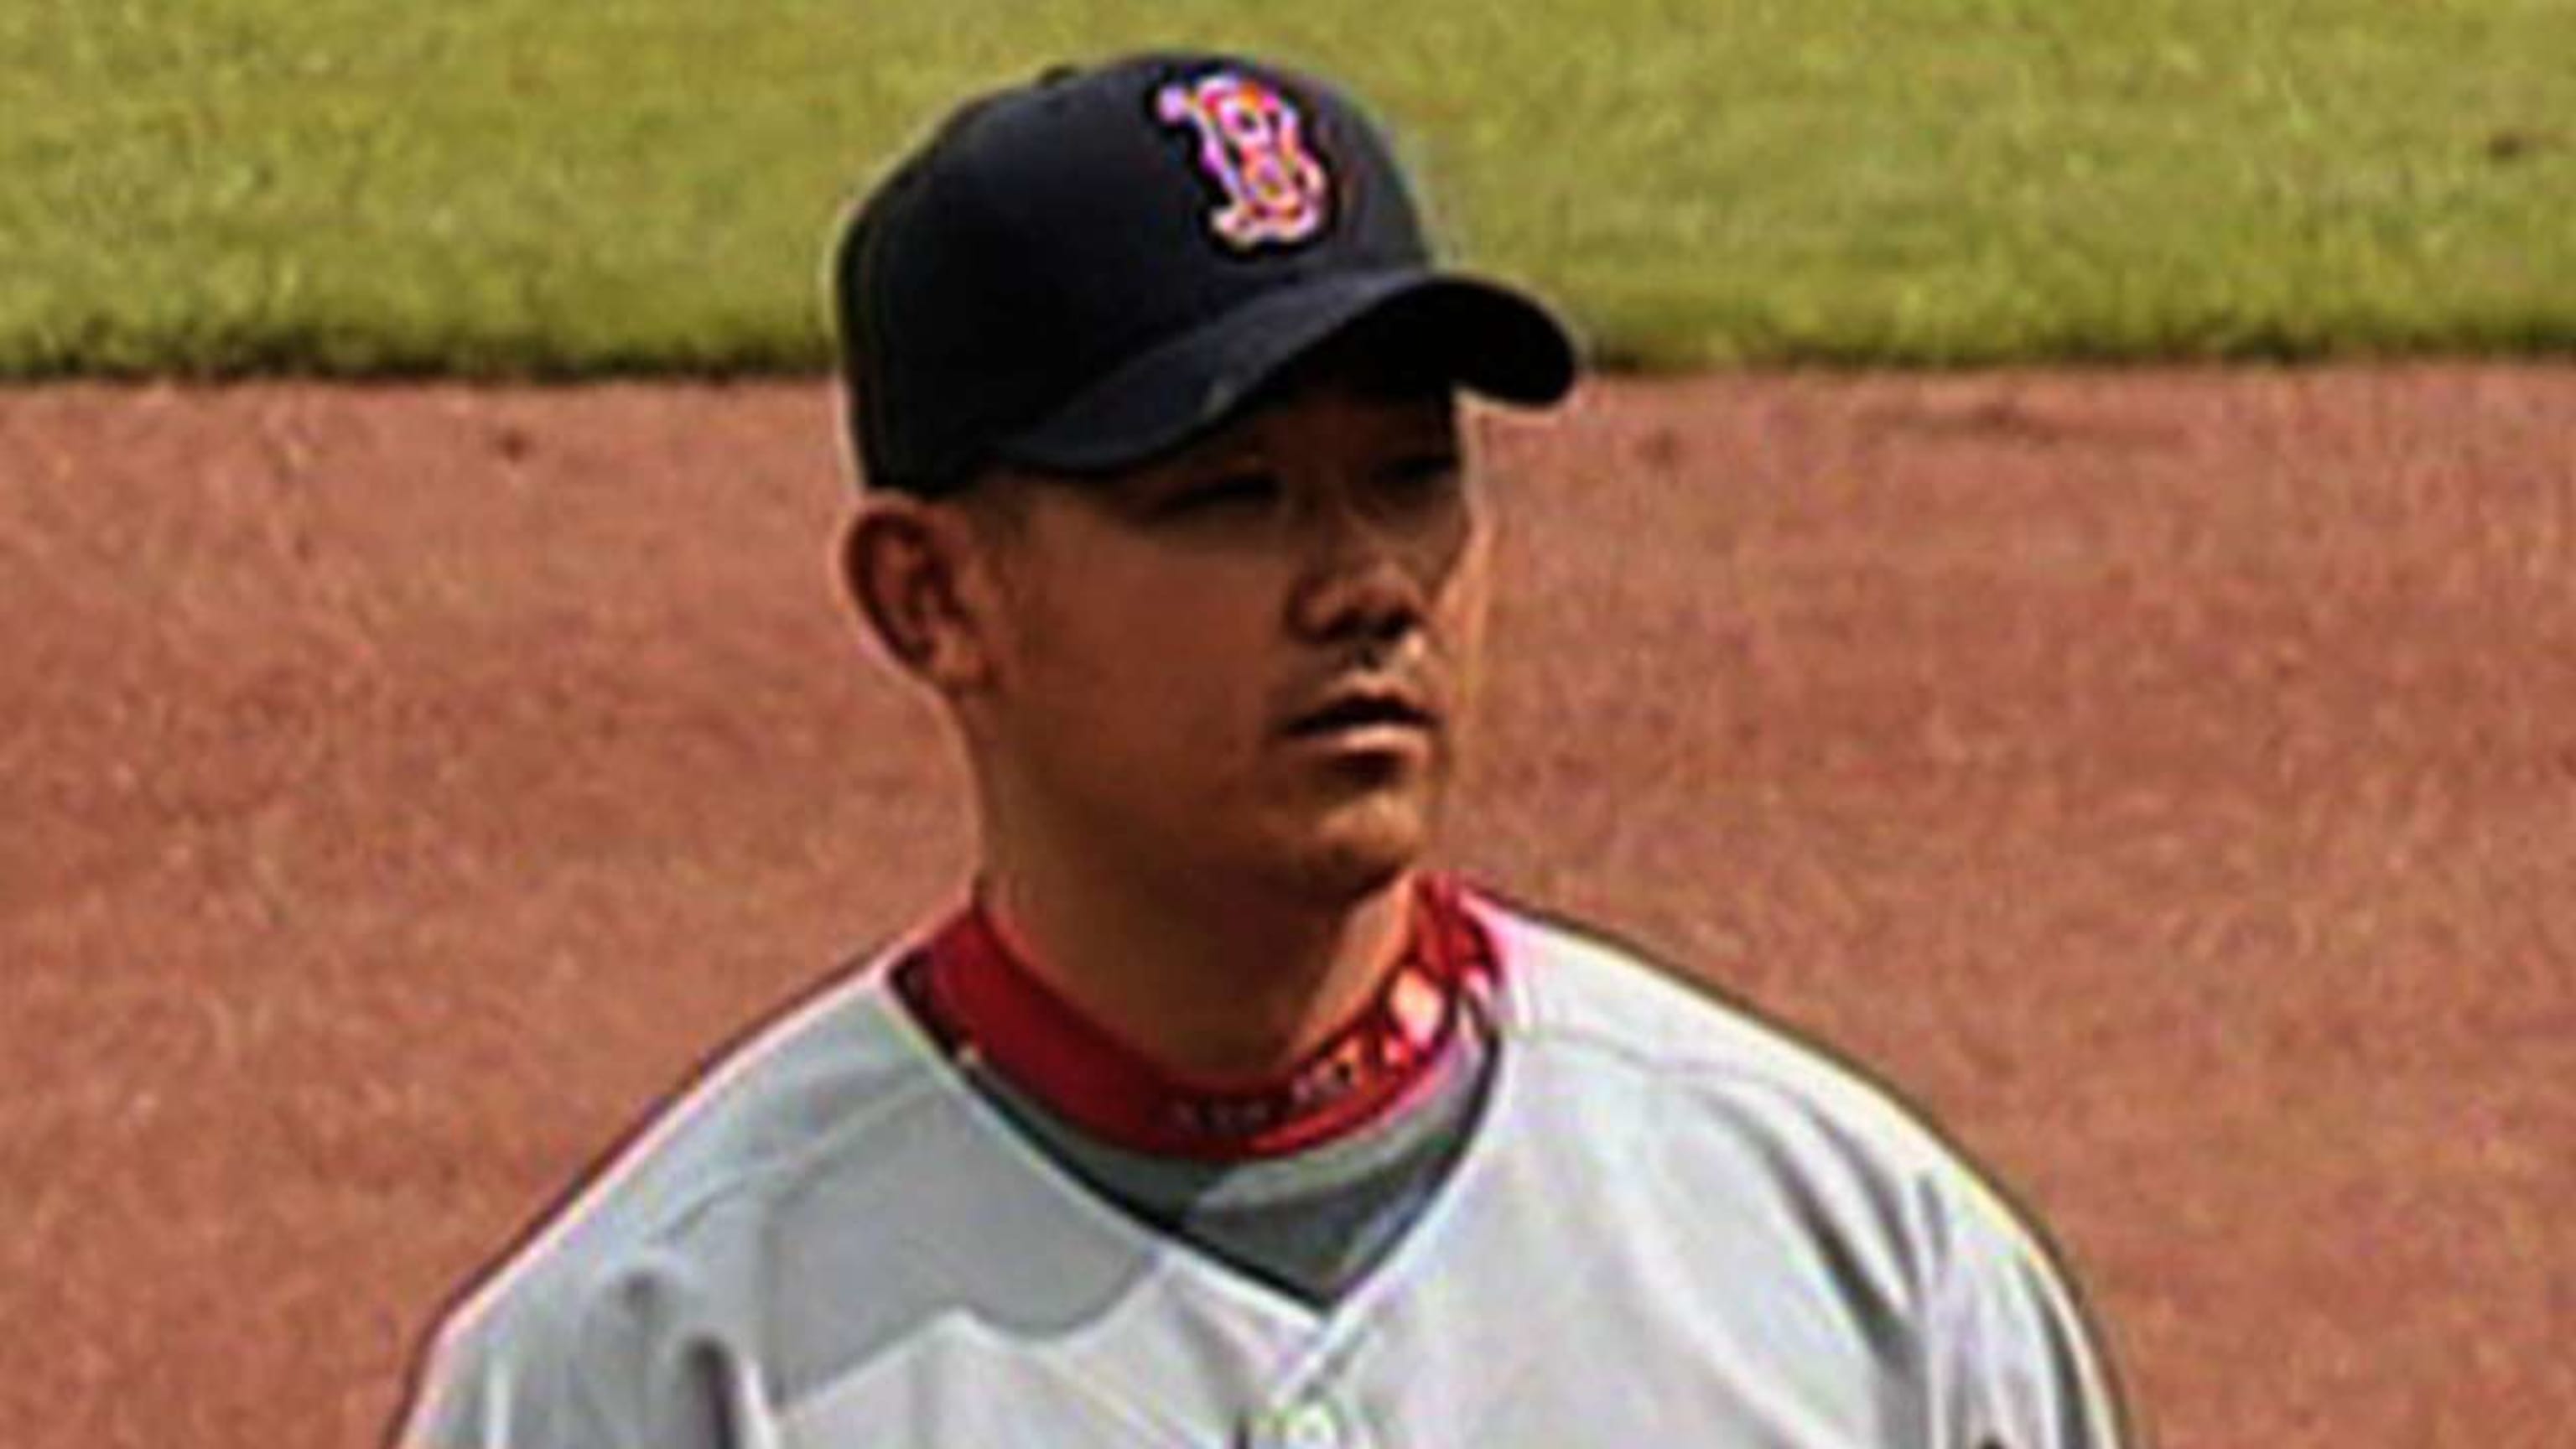 Daisuke Matsuzaka makes Mets debut, first major-league appearance